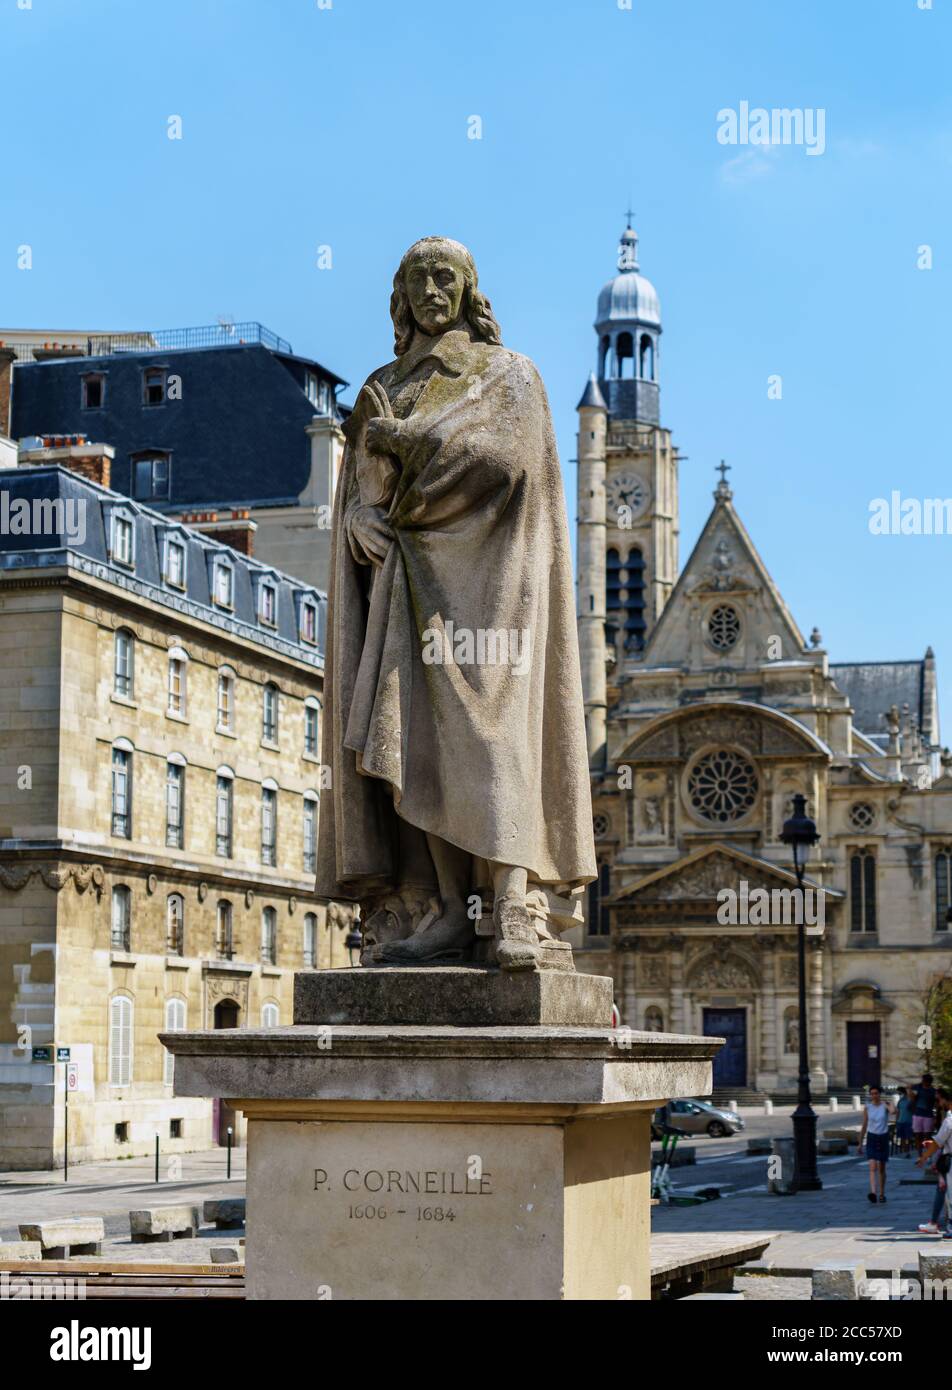 Statue de Pierre Corneille sur la place du Panthéon - Paris, France Banque D'Images